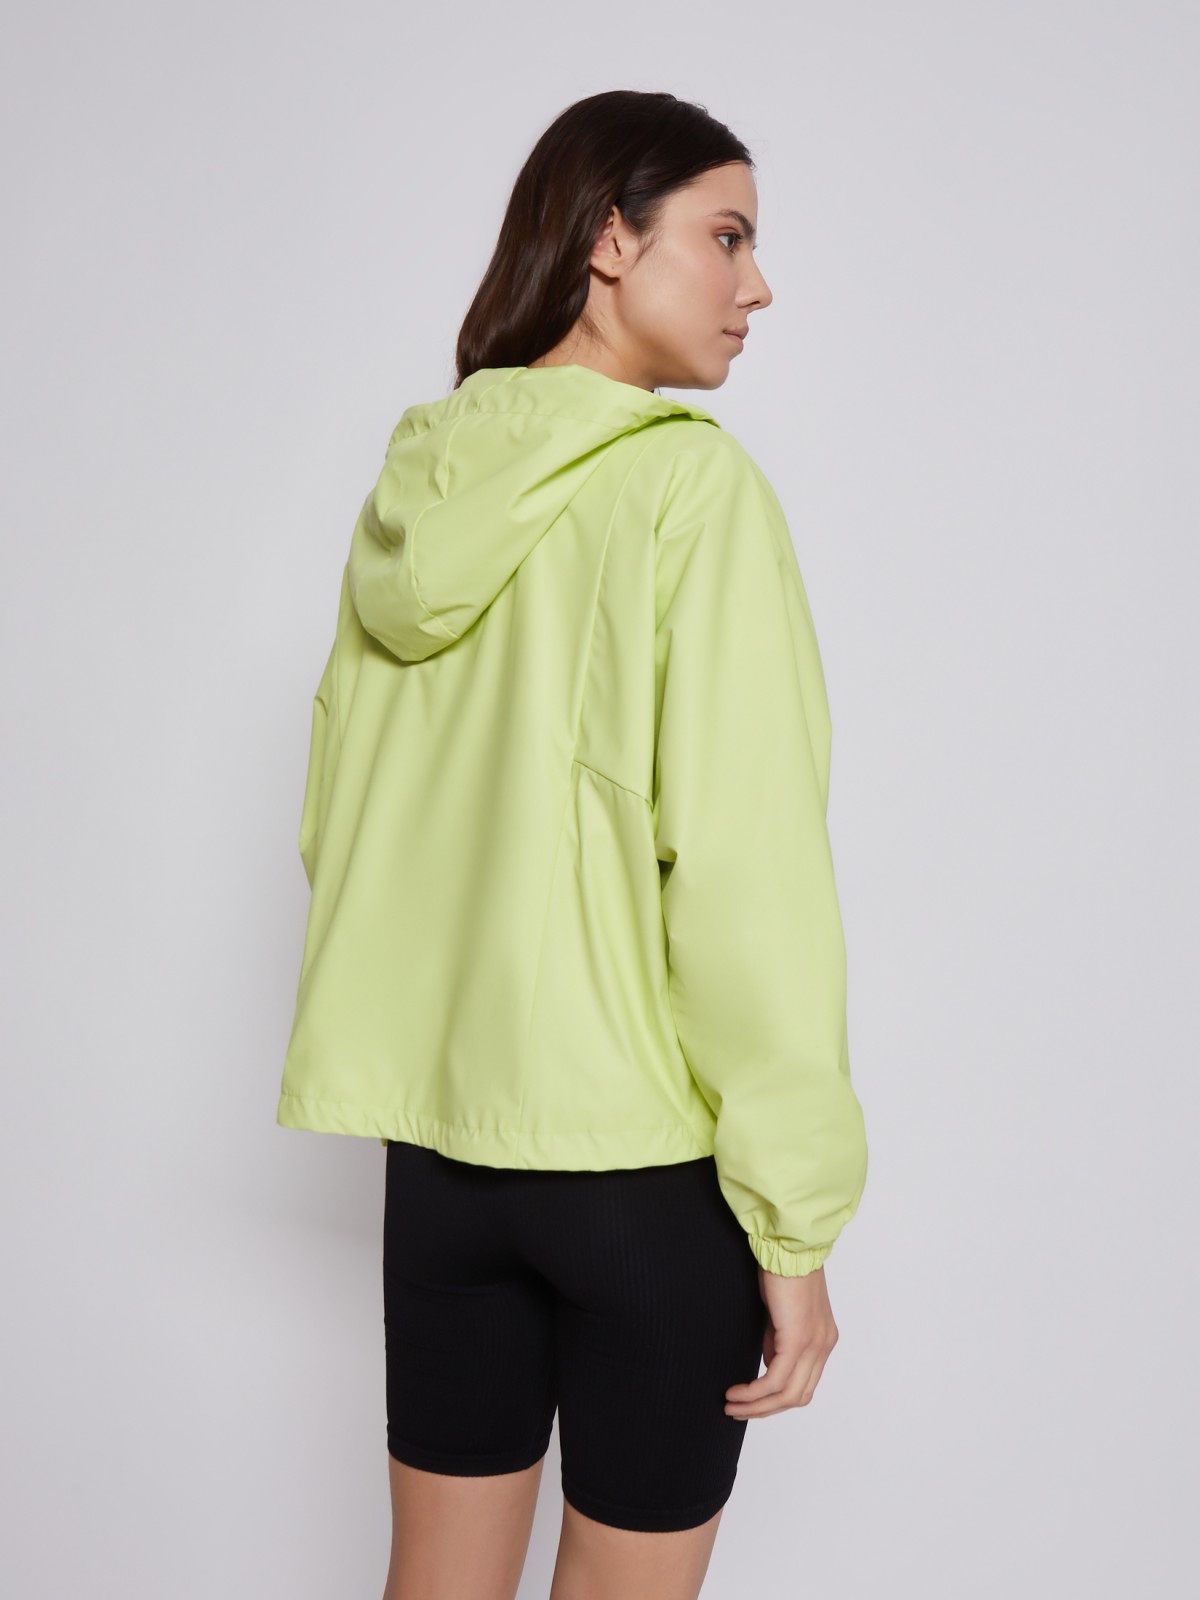 Куртка-ветровка с капюшоном zolla 02321562J034, цвет светло-зеленый, размер XS - фото 6